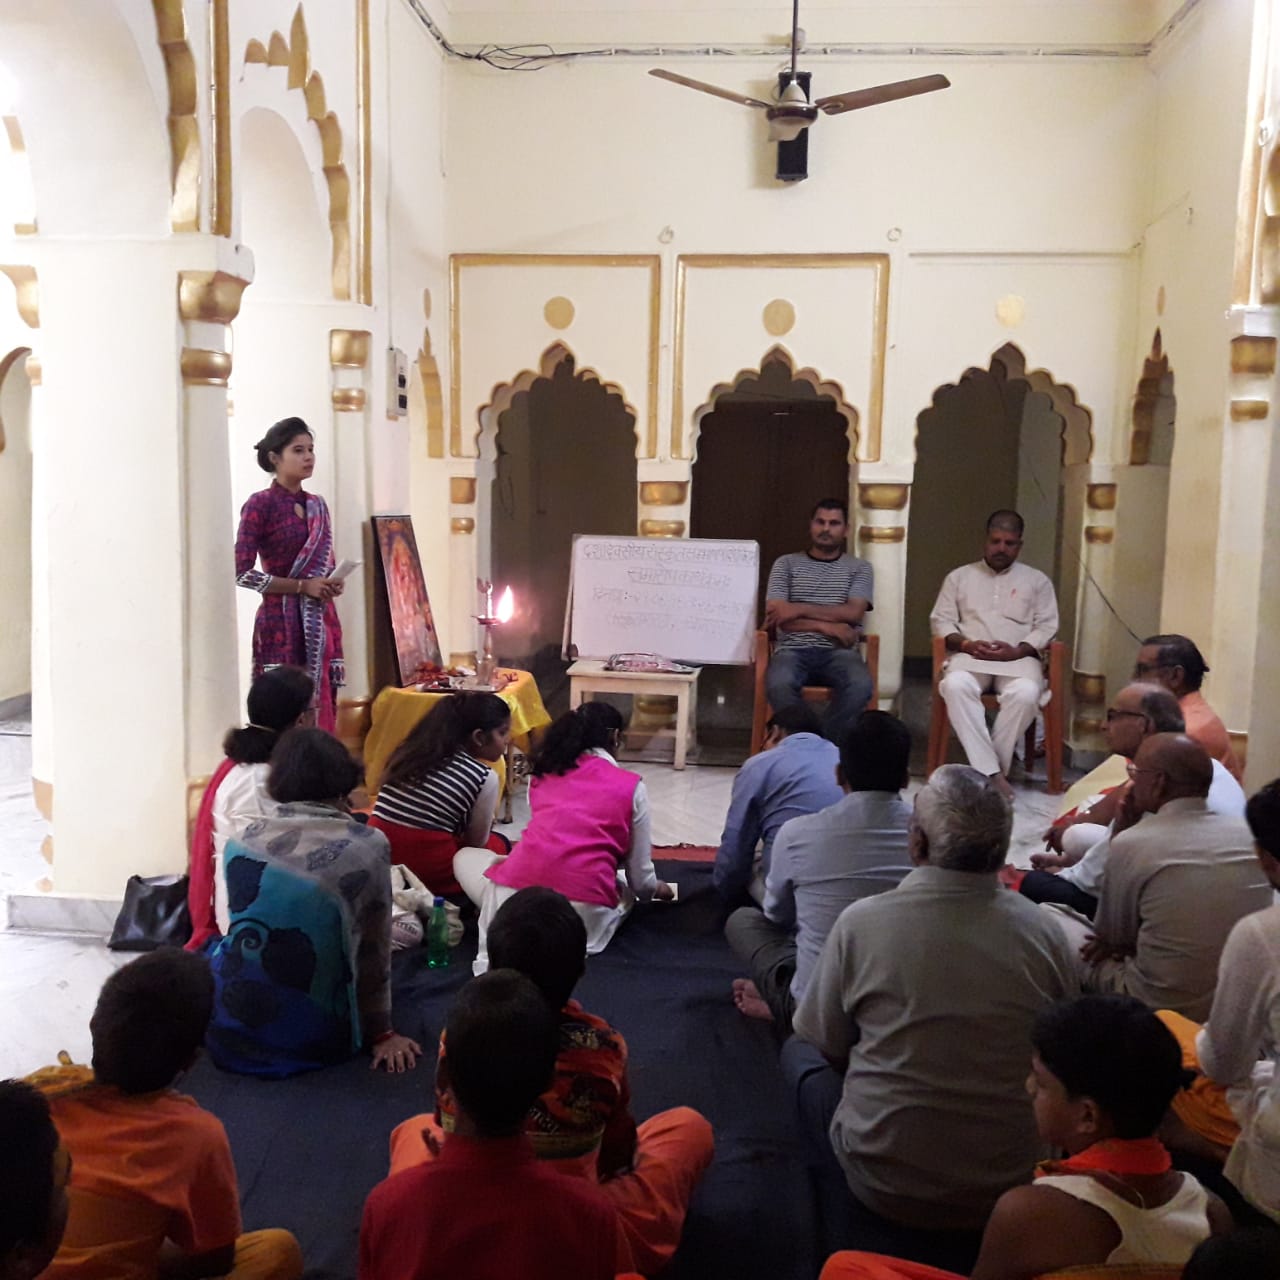 सामाजिक लोगों ने सीखा संस्कृत बोलना, संस्कृत सम्भाषण शिविर का हुआ समापन | New India Times